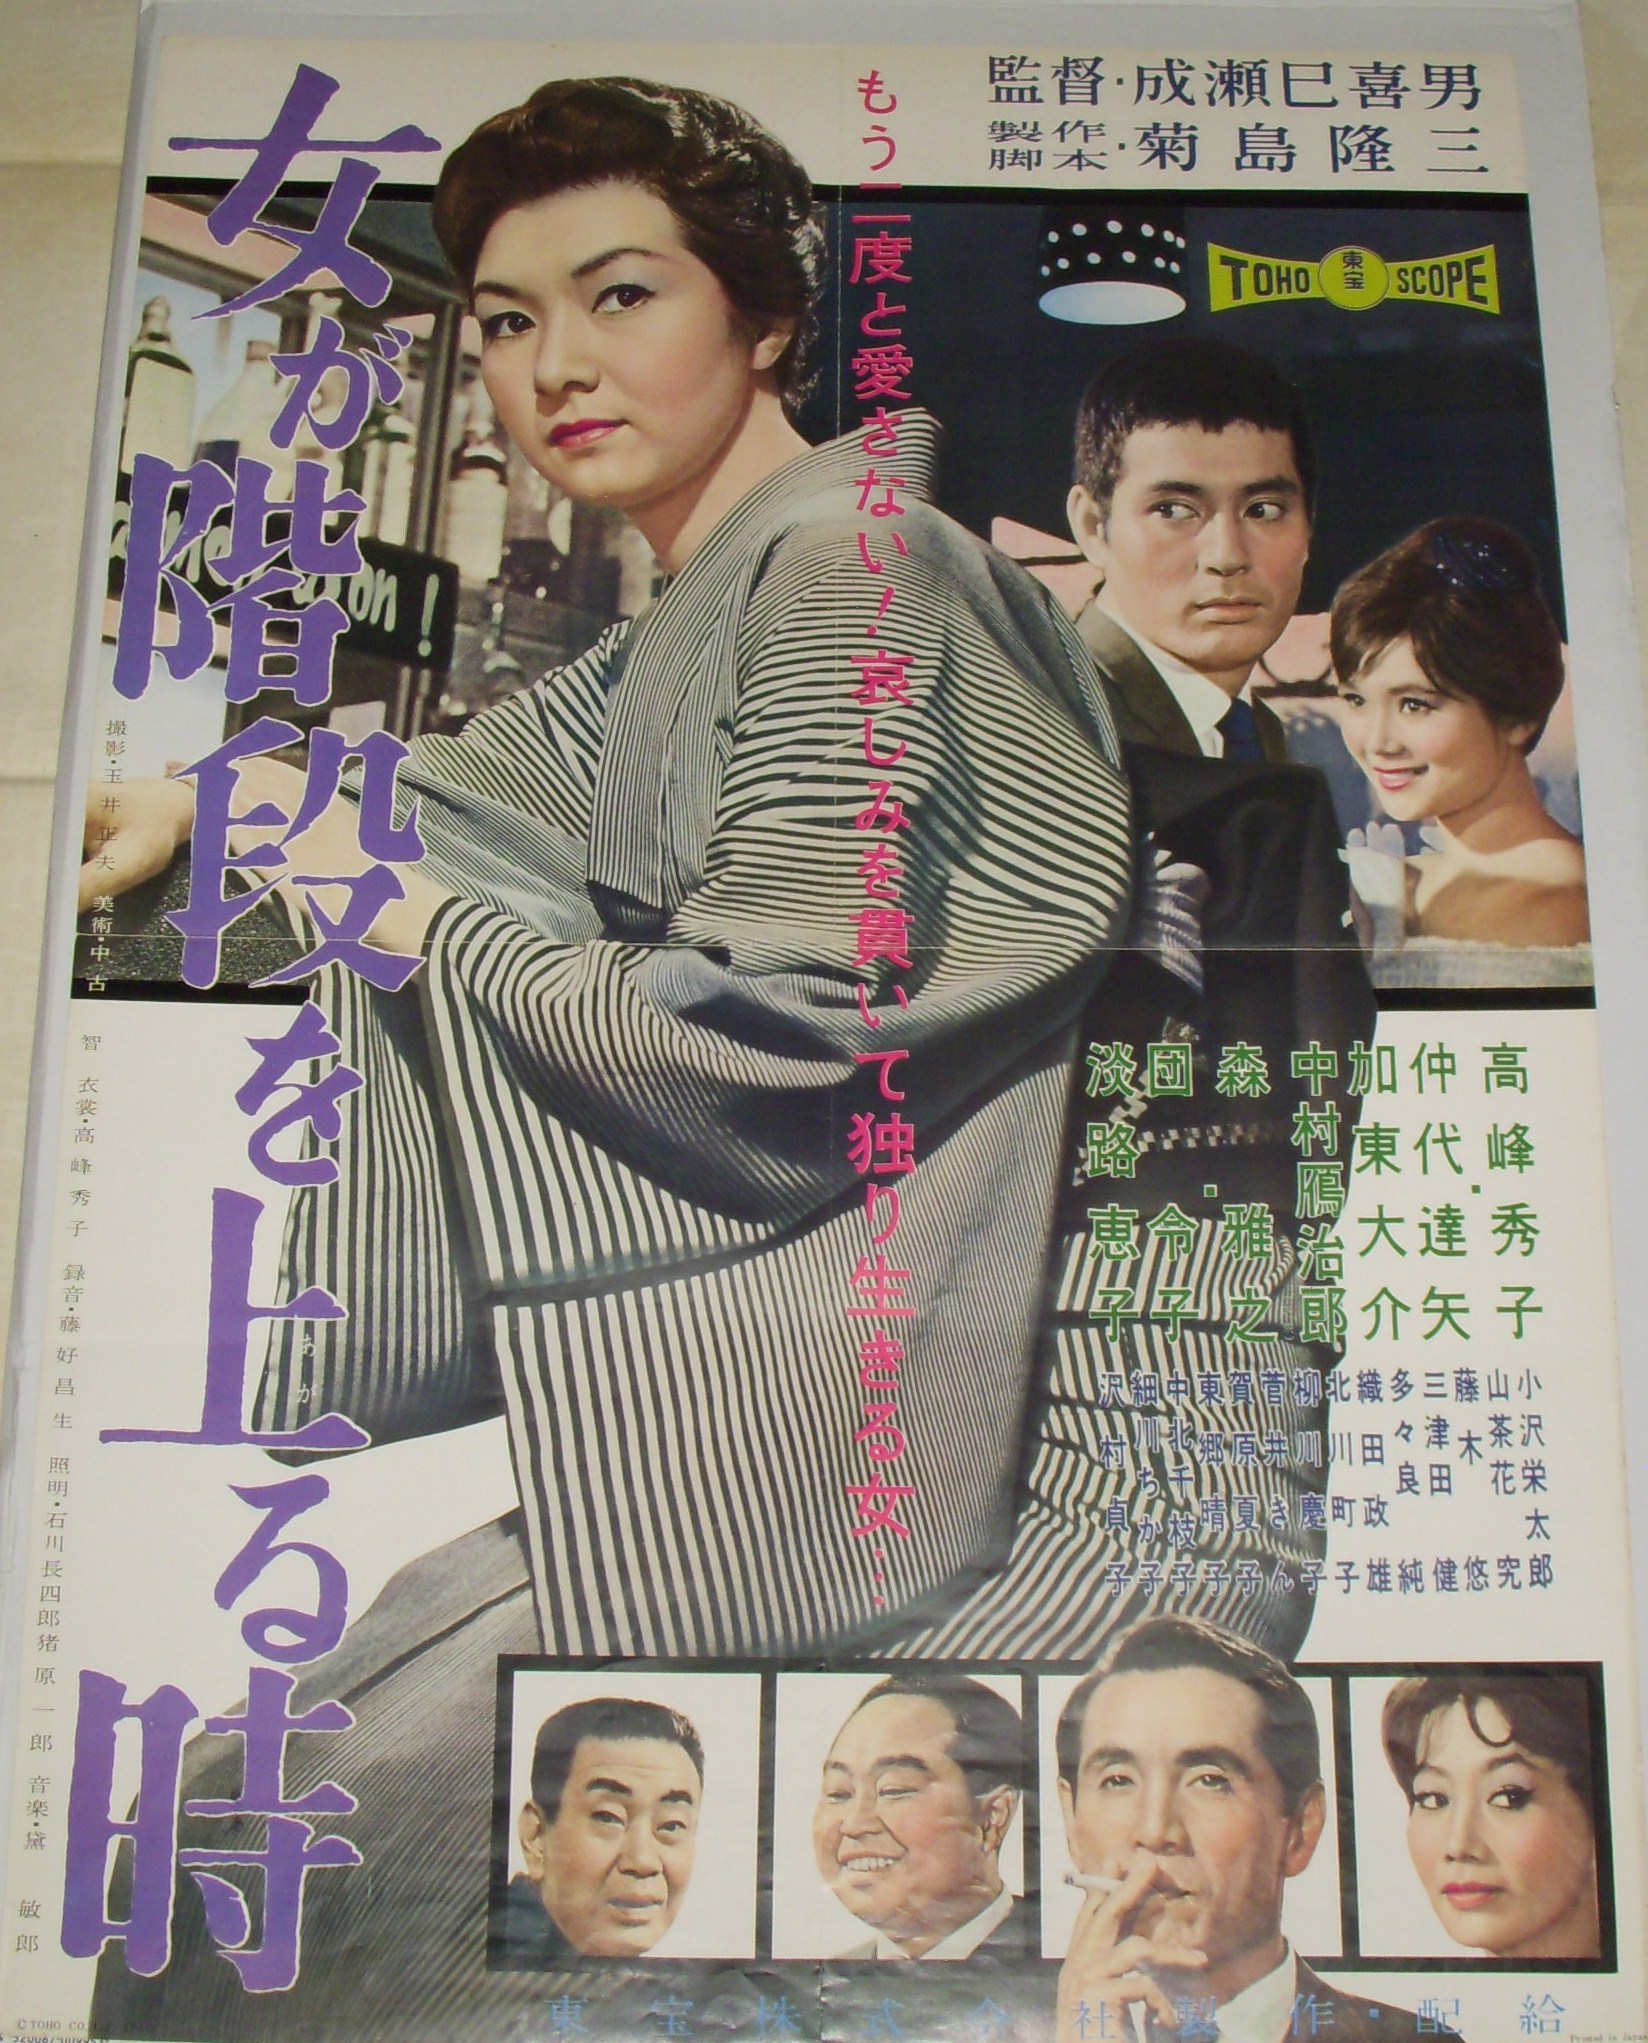 ひき逃げ 地方版・映画ポスター 1966年 成瀬巳喜男監督 高峰秀子 黒沢